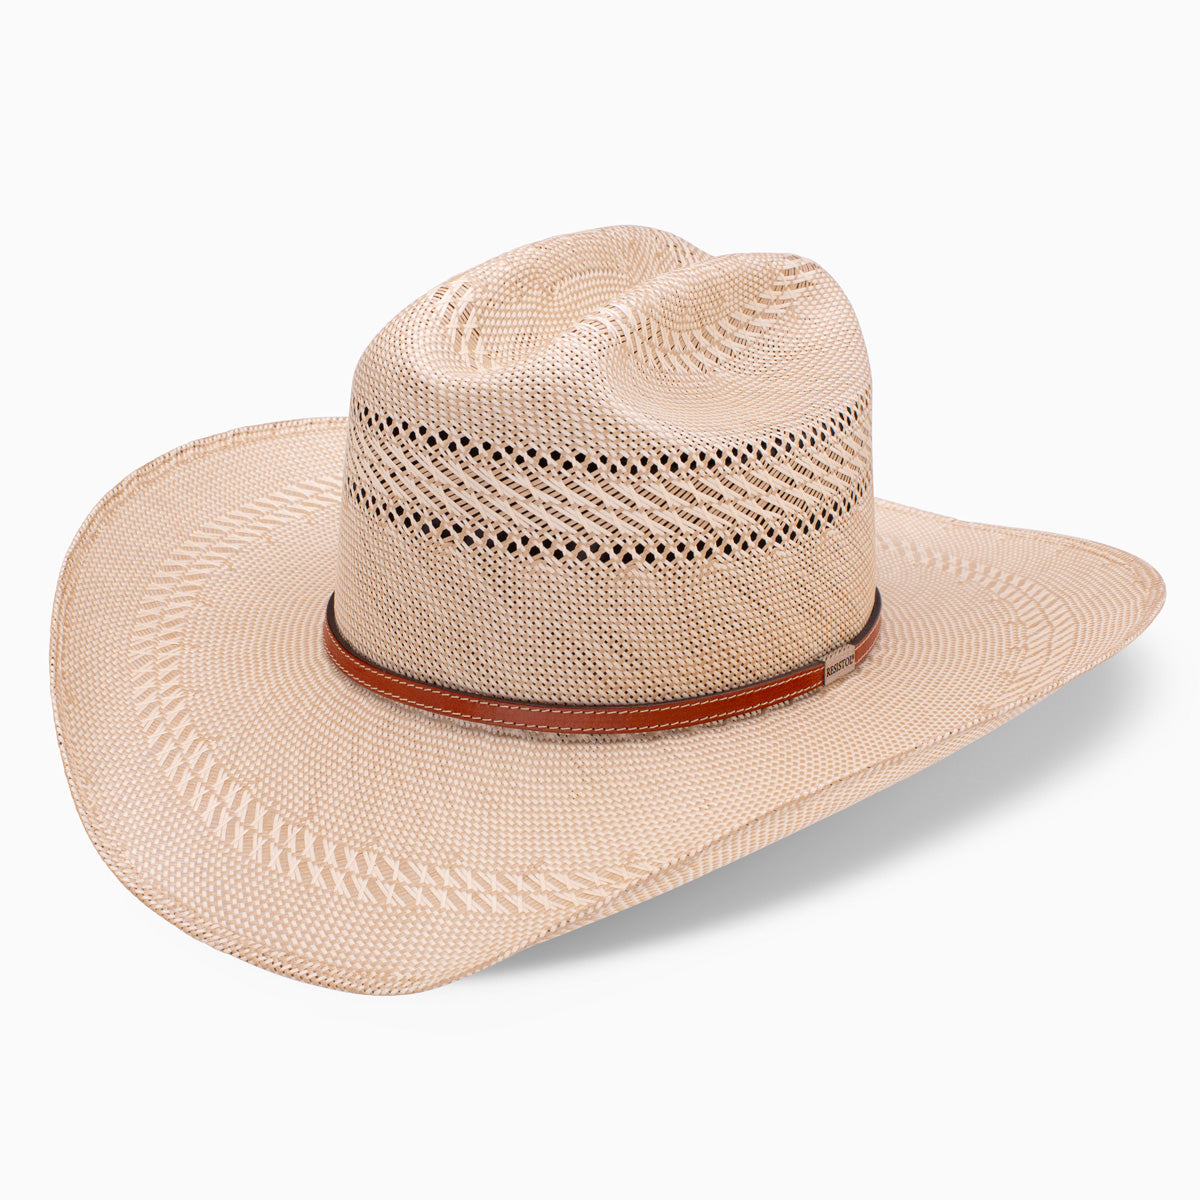 Resistol | Best All-Around Cowboy Hats | Straw, Felt & More!